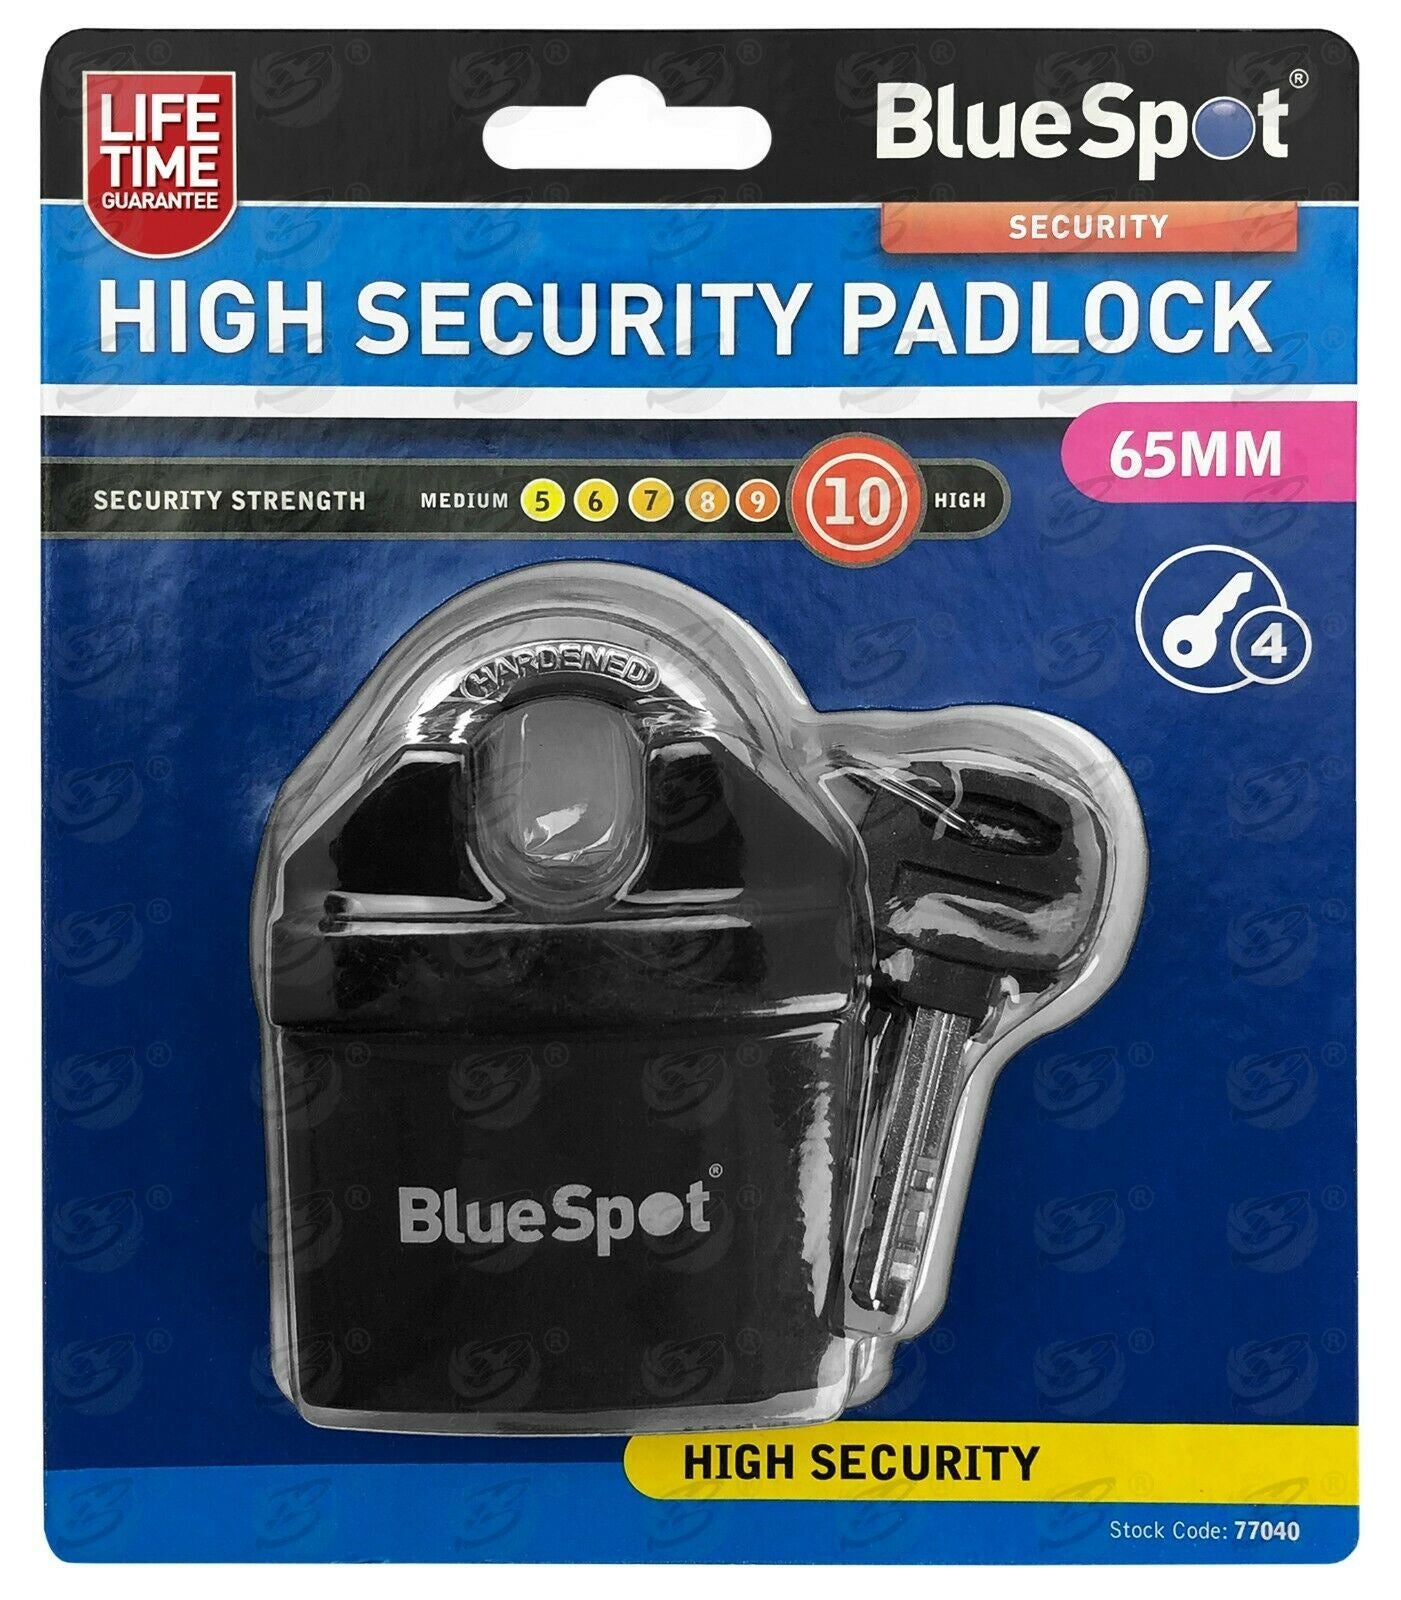 BLUESPOT 65MM HIGH SECURITY PADLOCK